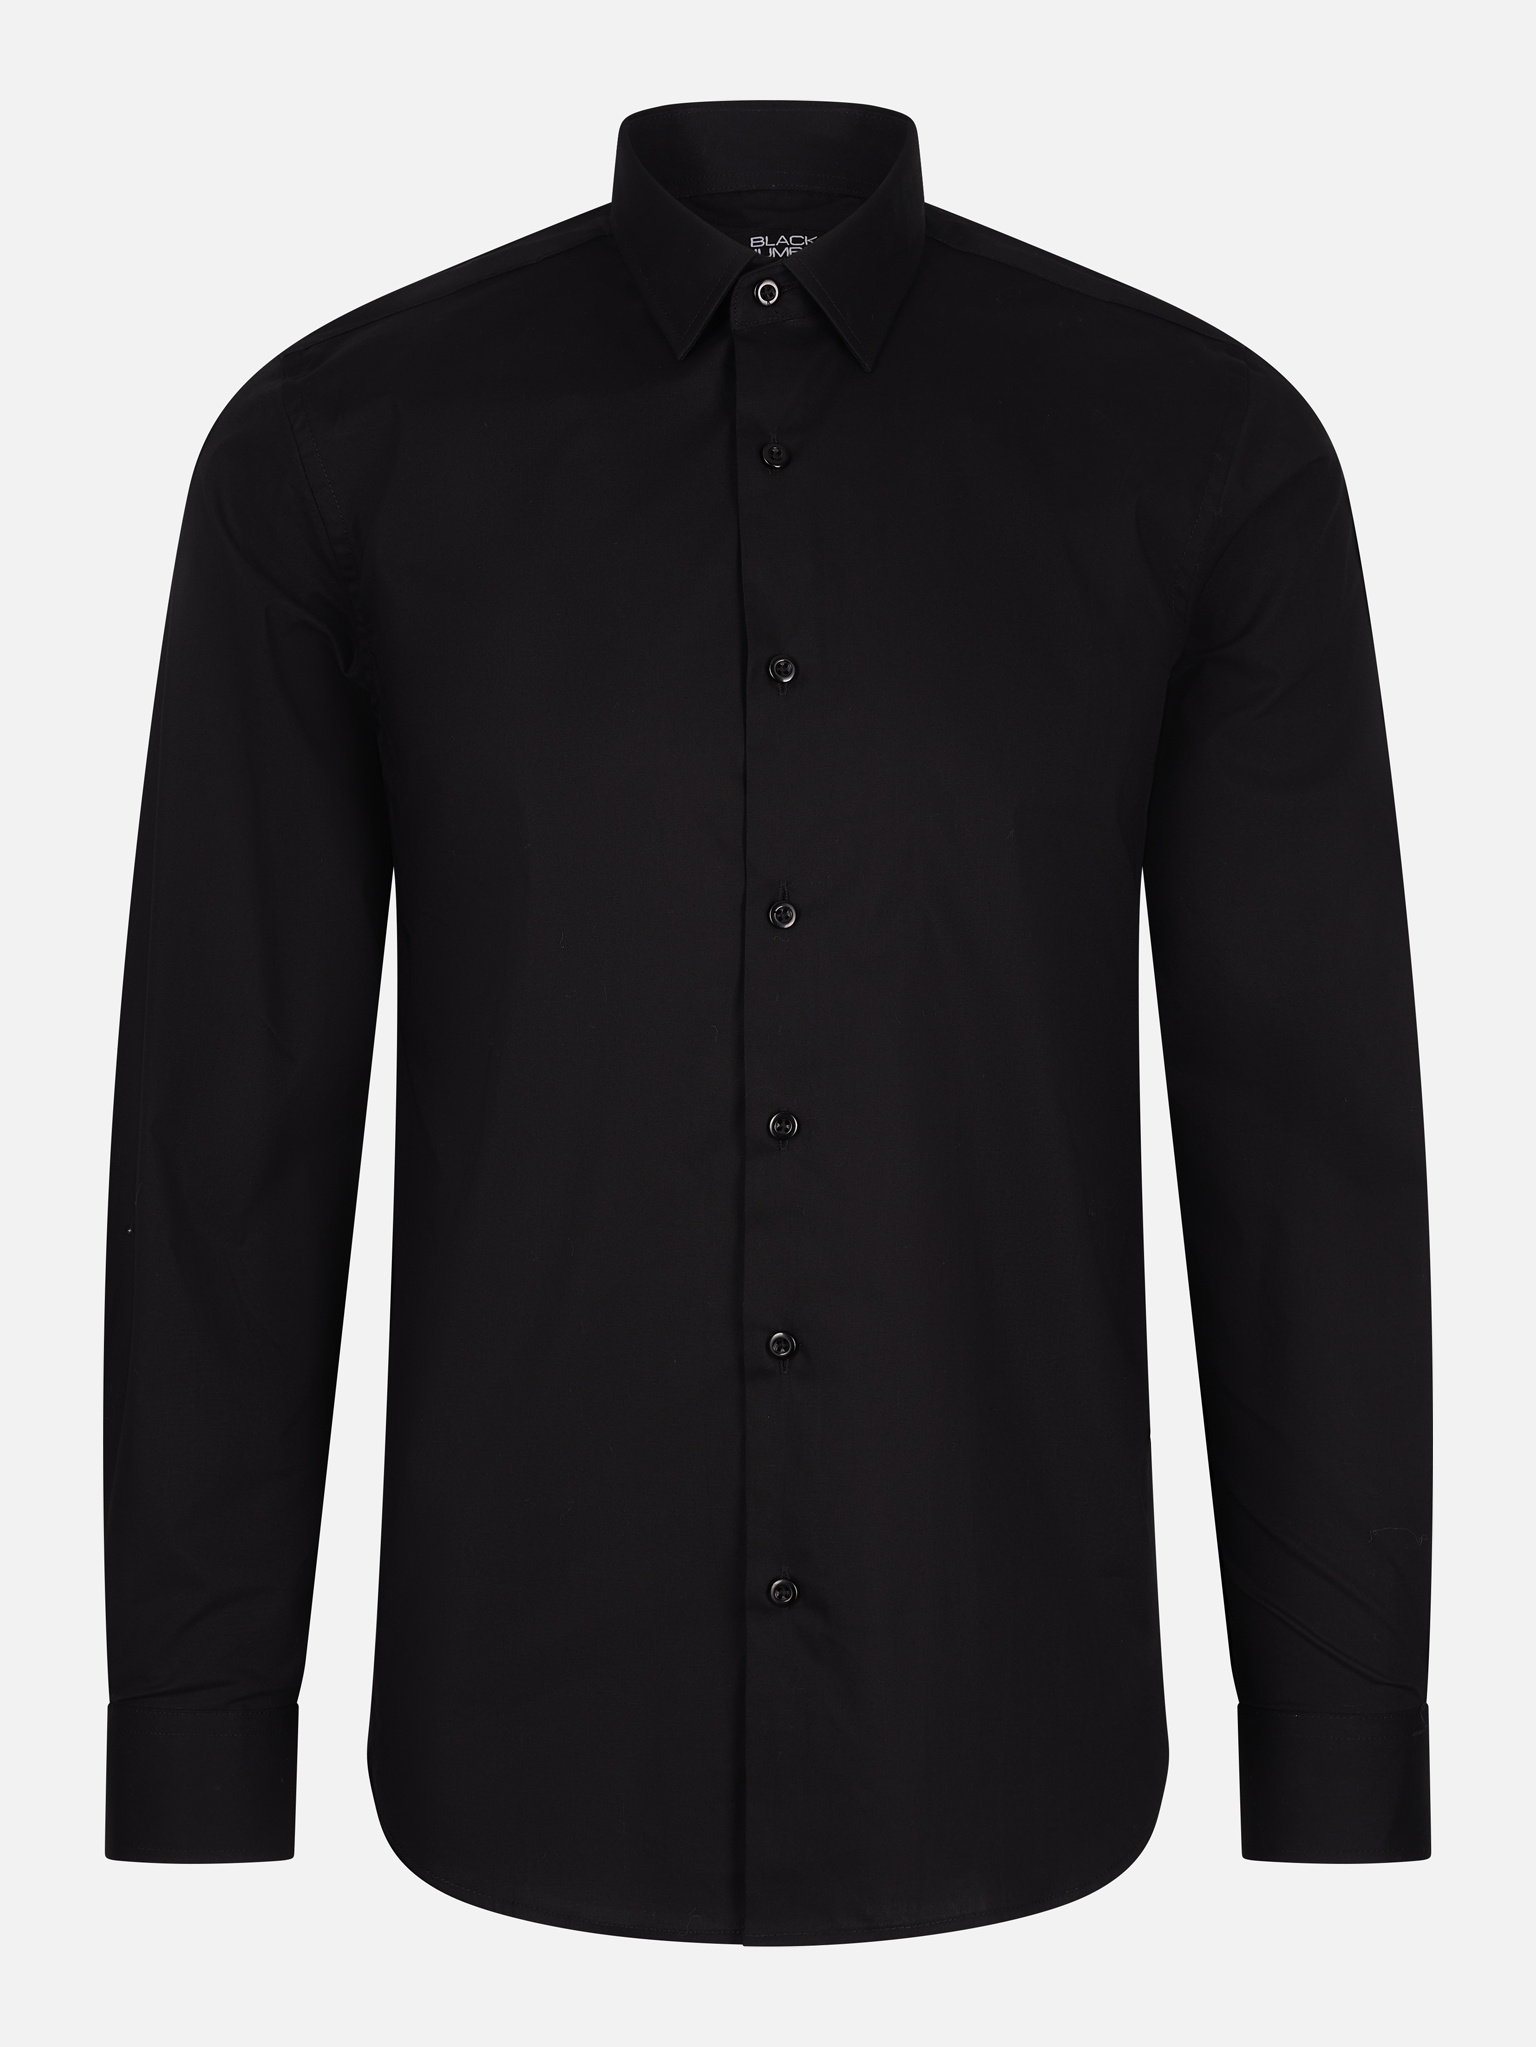 Zwart Slim Fit Overhemd Heren Voor maar € 39,95| bij Valenci! -